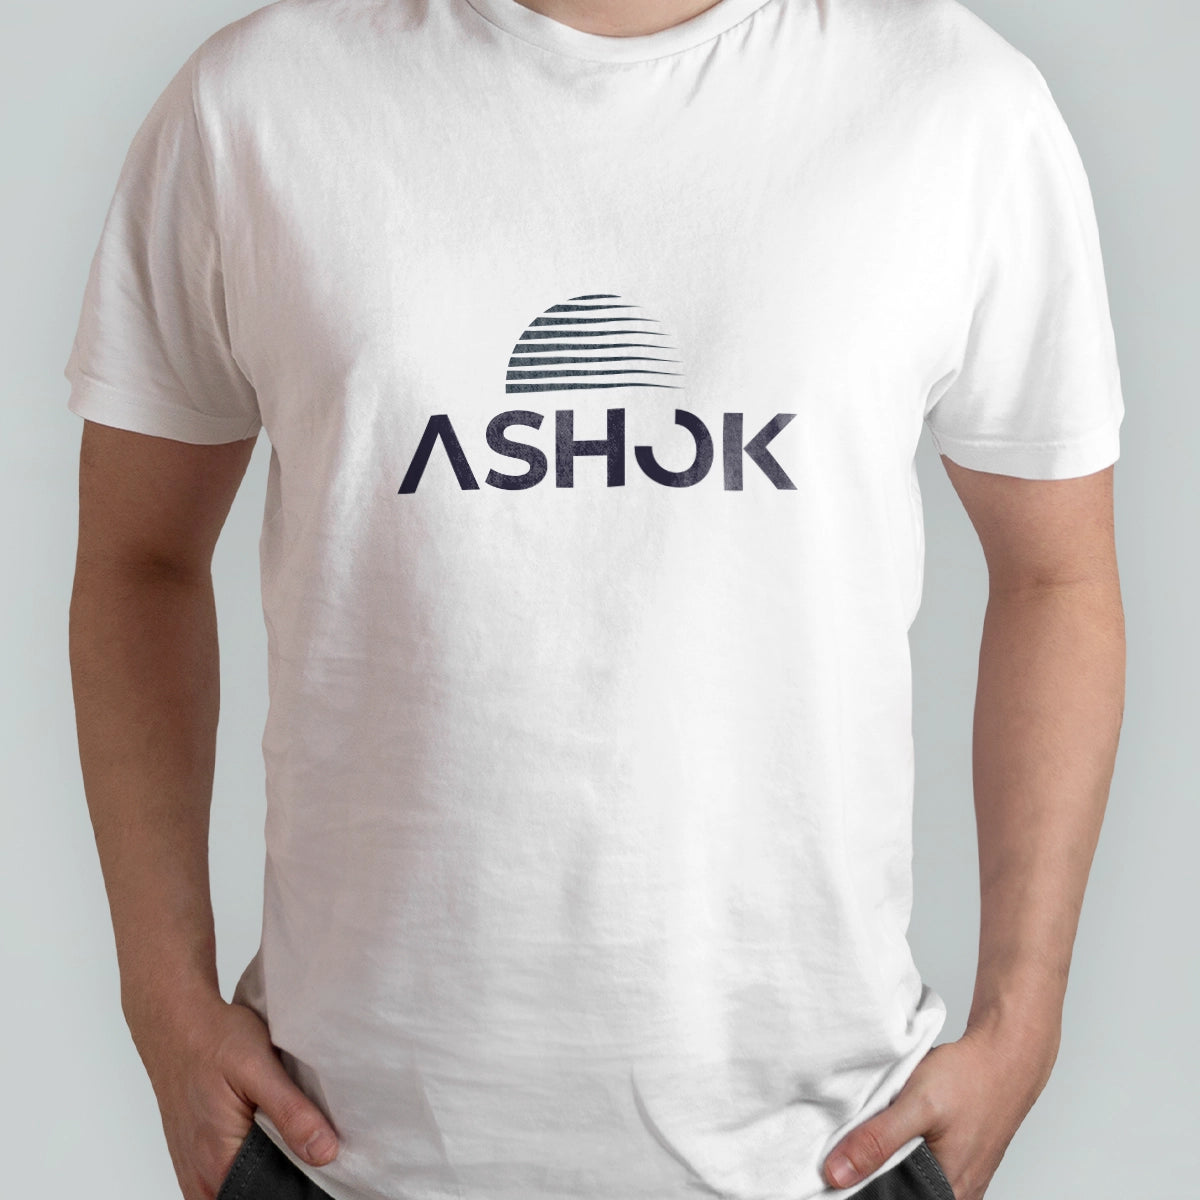 Ashok.co